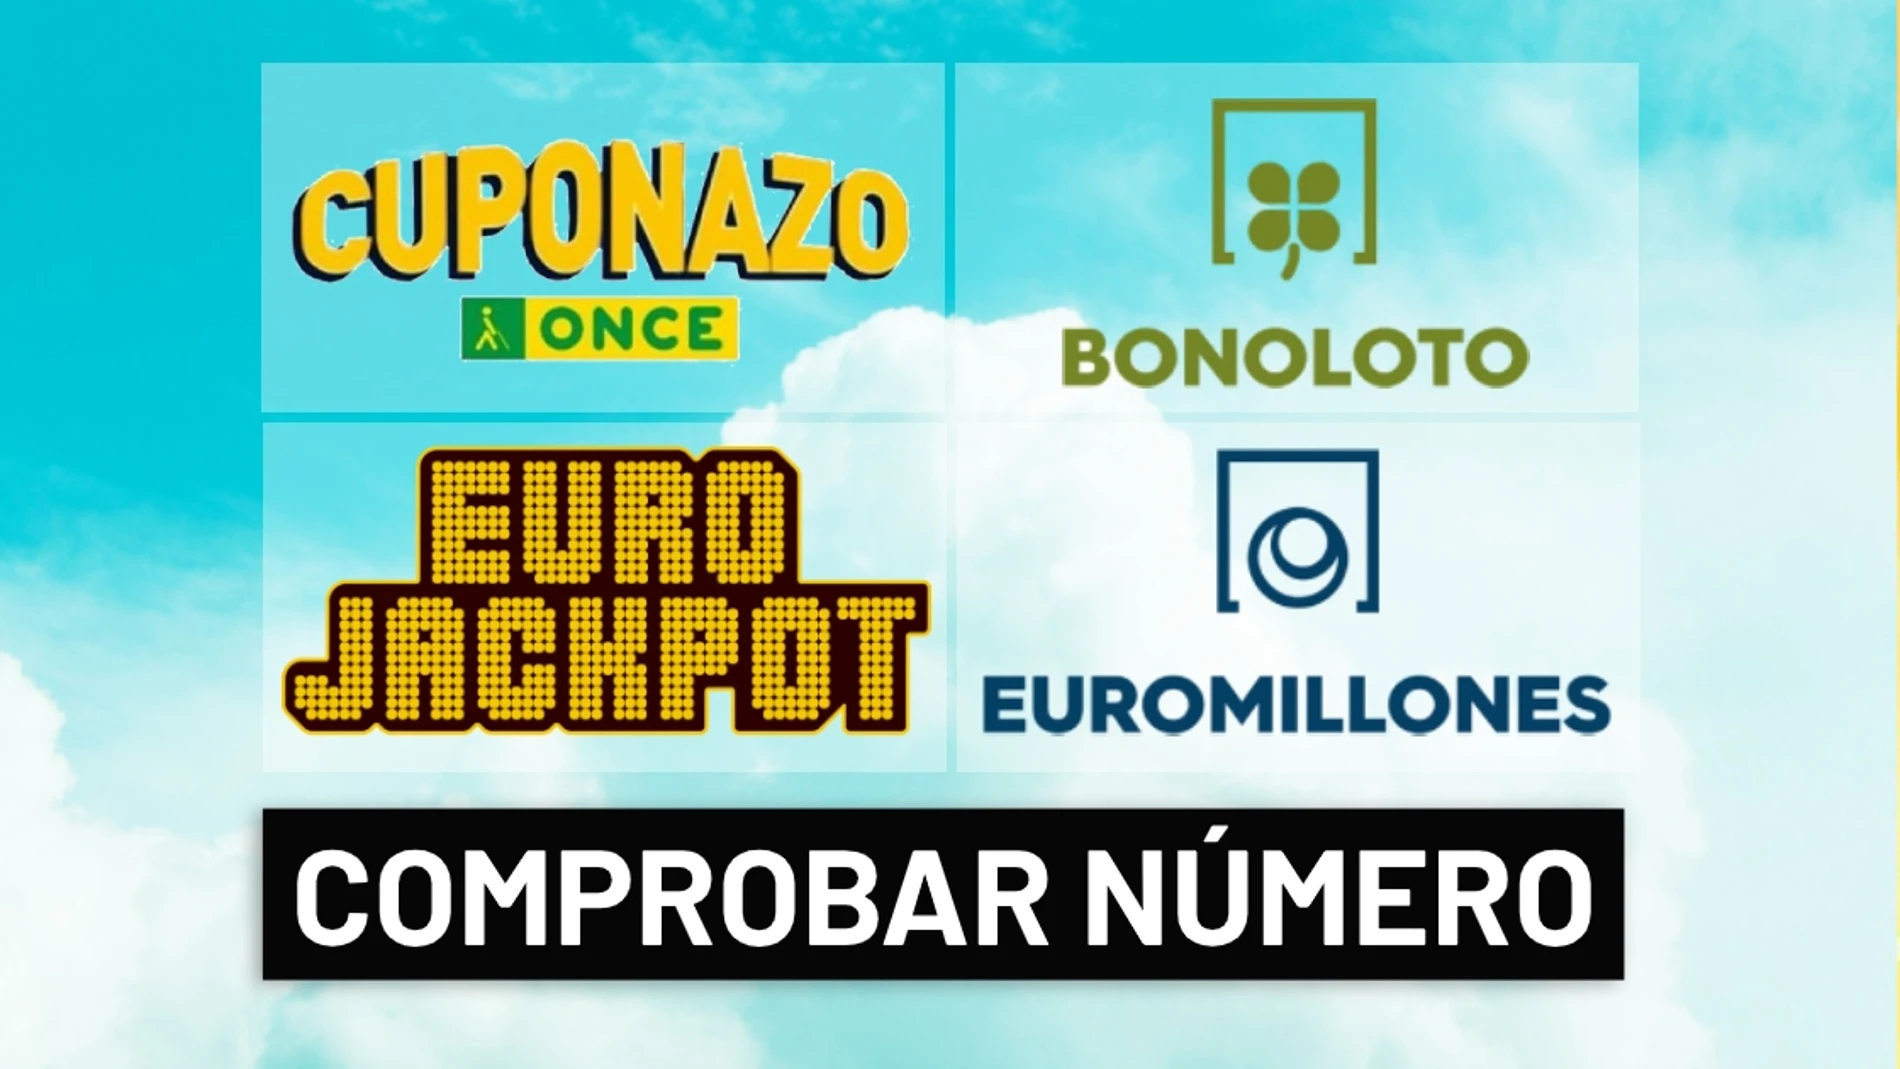 Comprobar resultado del sorteo del Cuponazo ONCE, Euromillones, Eurojackpot y Bonoloto hoy en directo